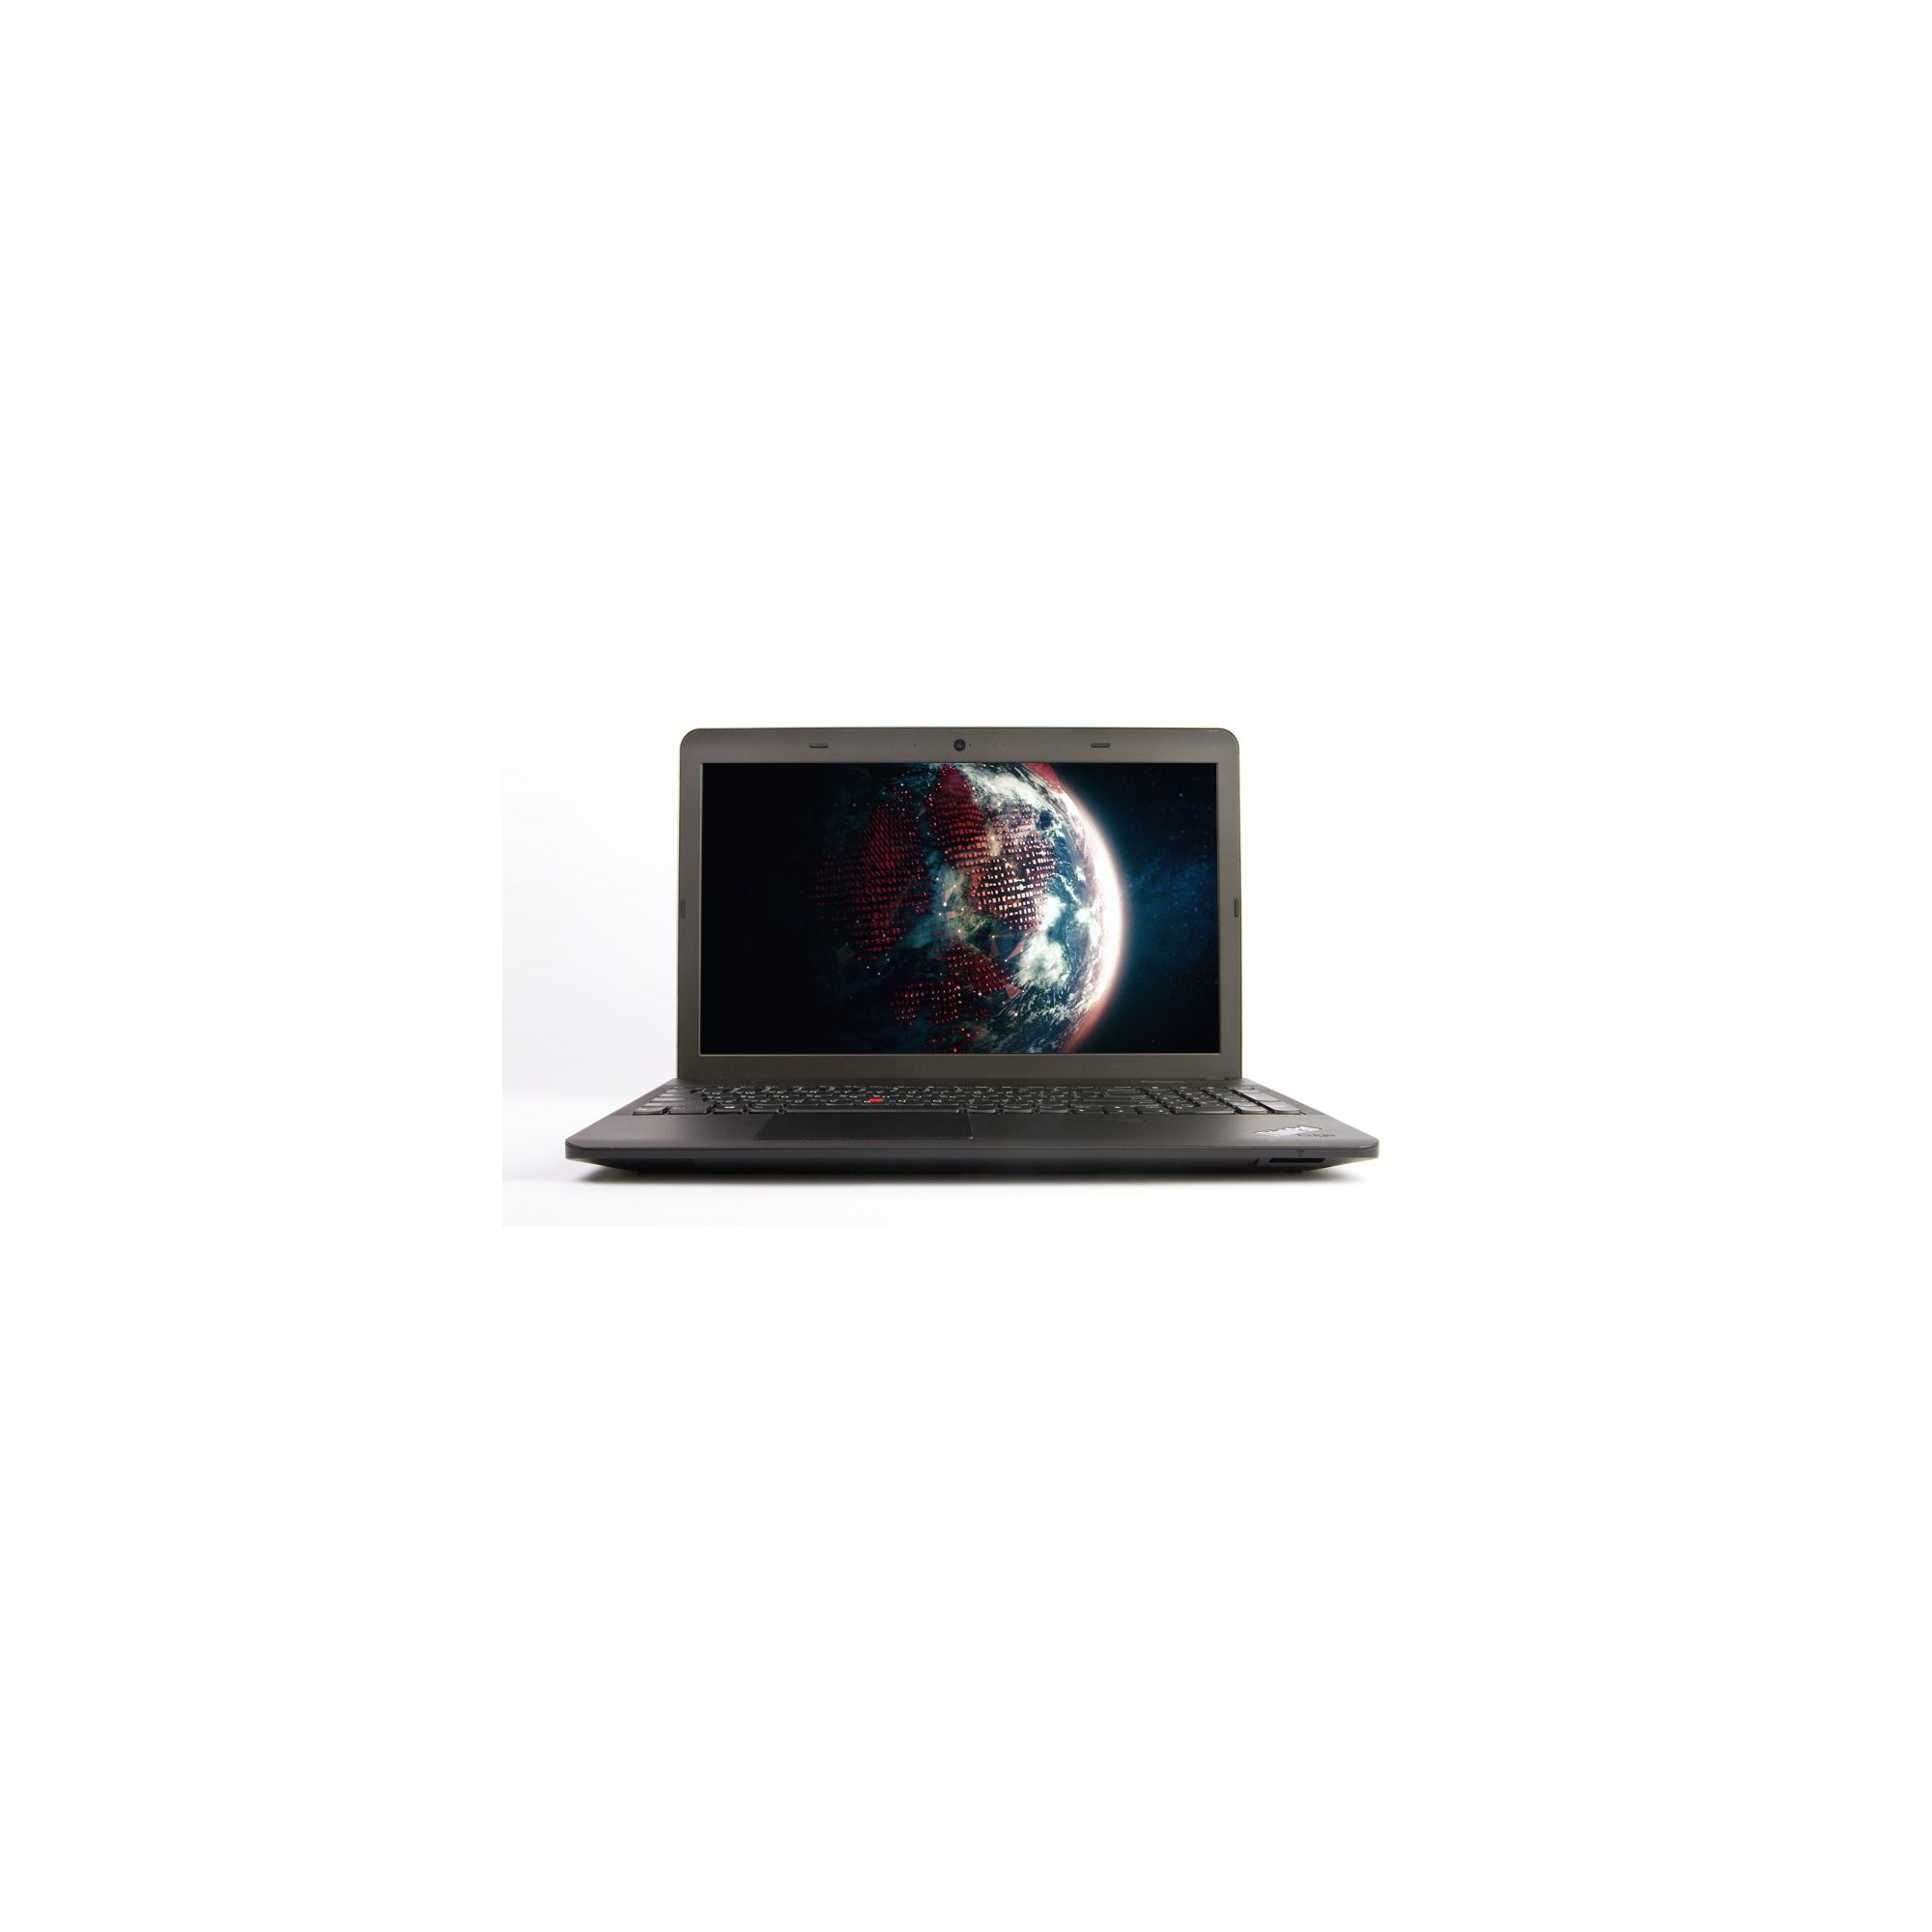 Lenovo ThinkPad Edge E531 688569G (15.6 inch) Notebook Core i3 2.5GHz 4GB 500GB Win 7 Pro & Win 8 Pro